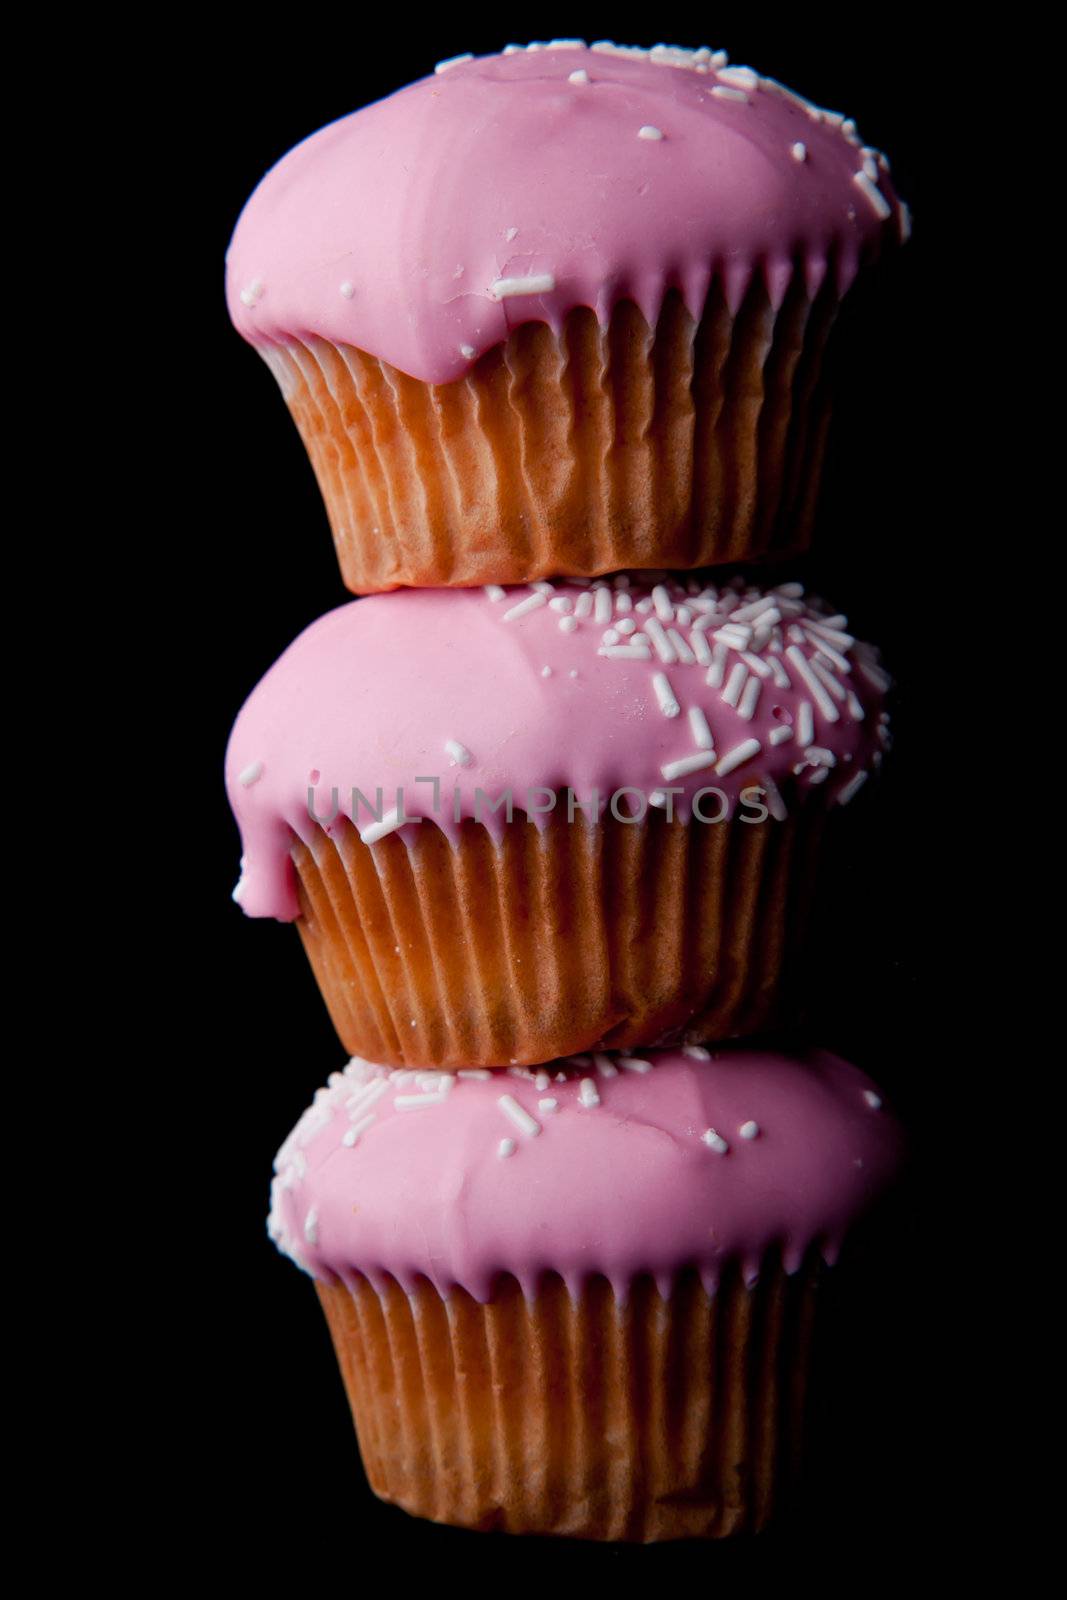 Pink cupcakes by Wavebreakmedia